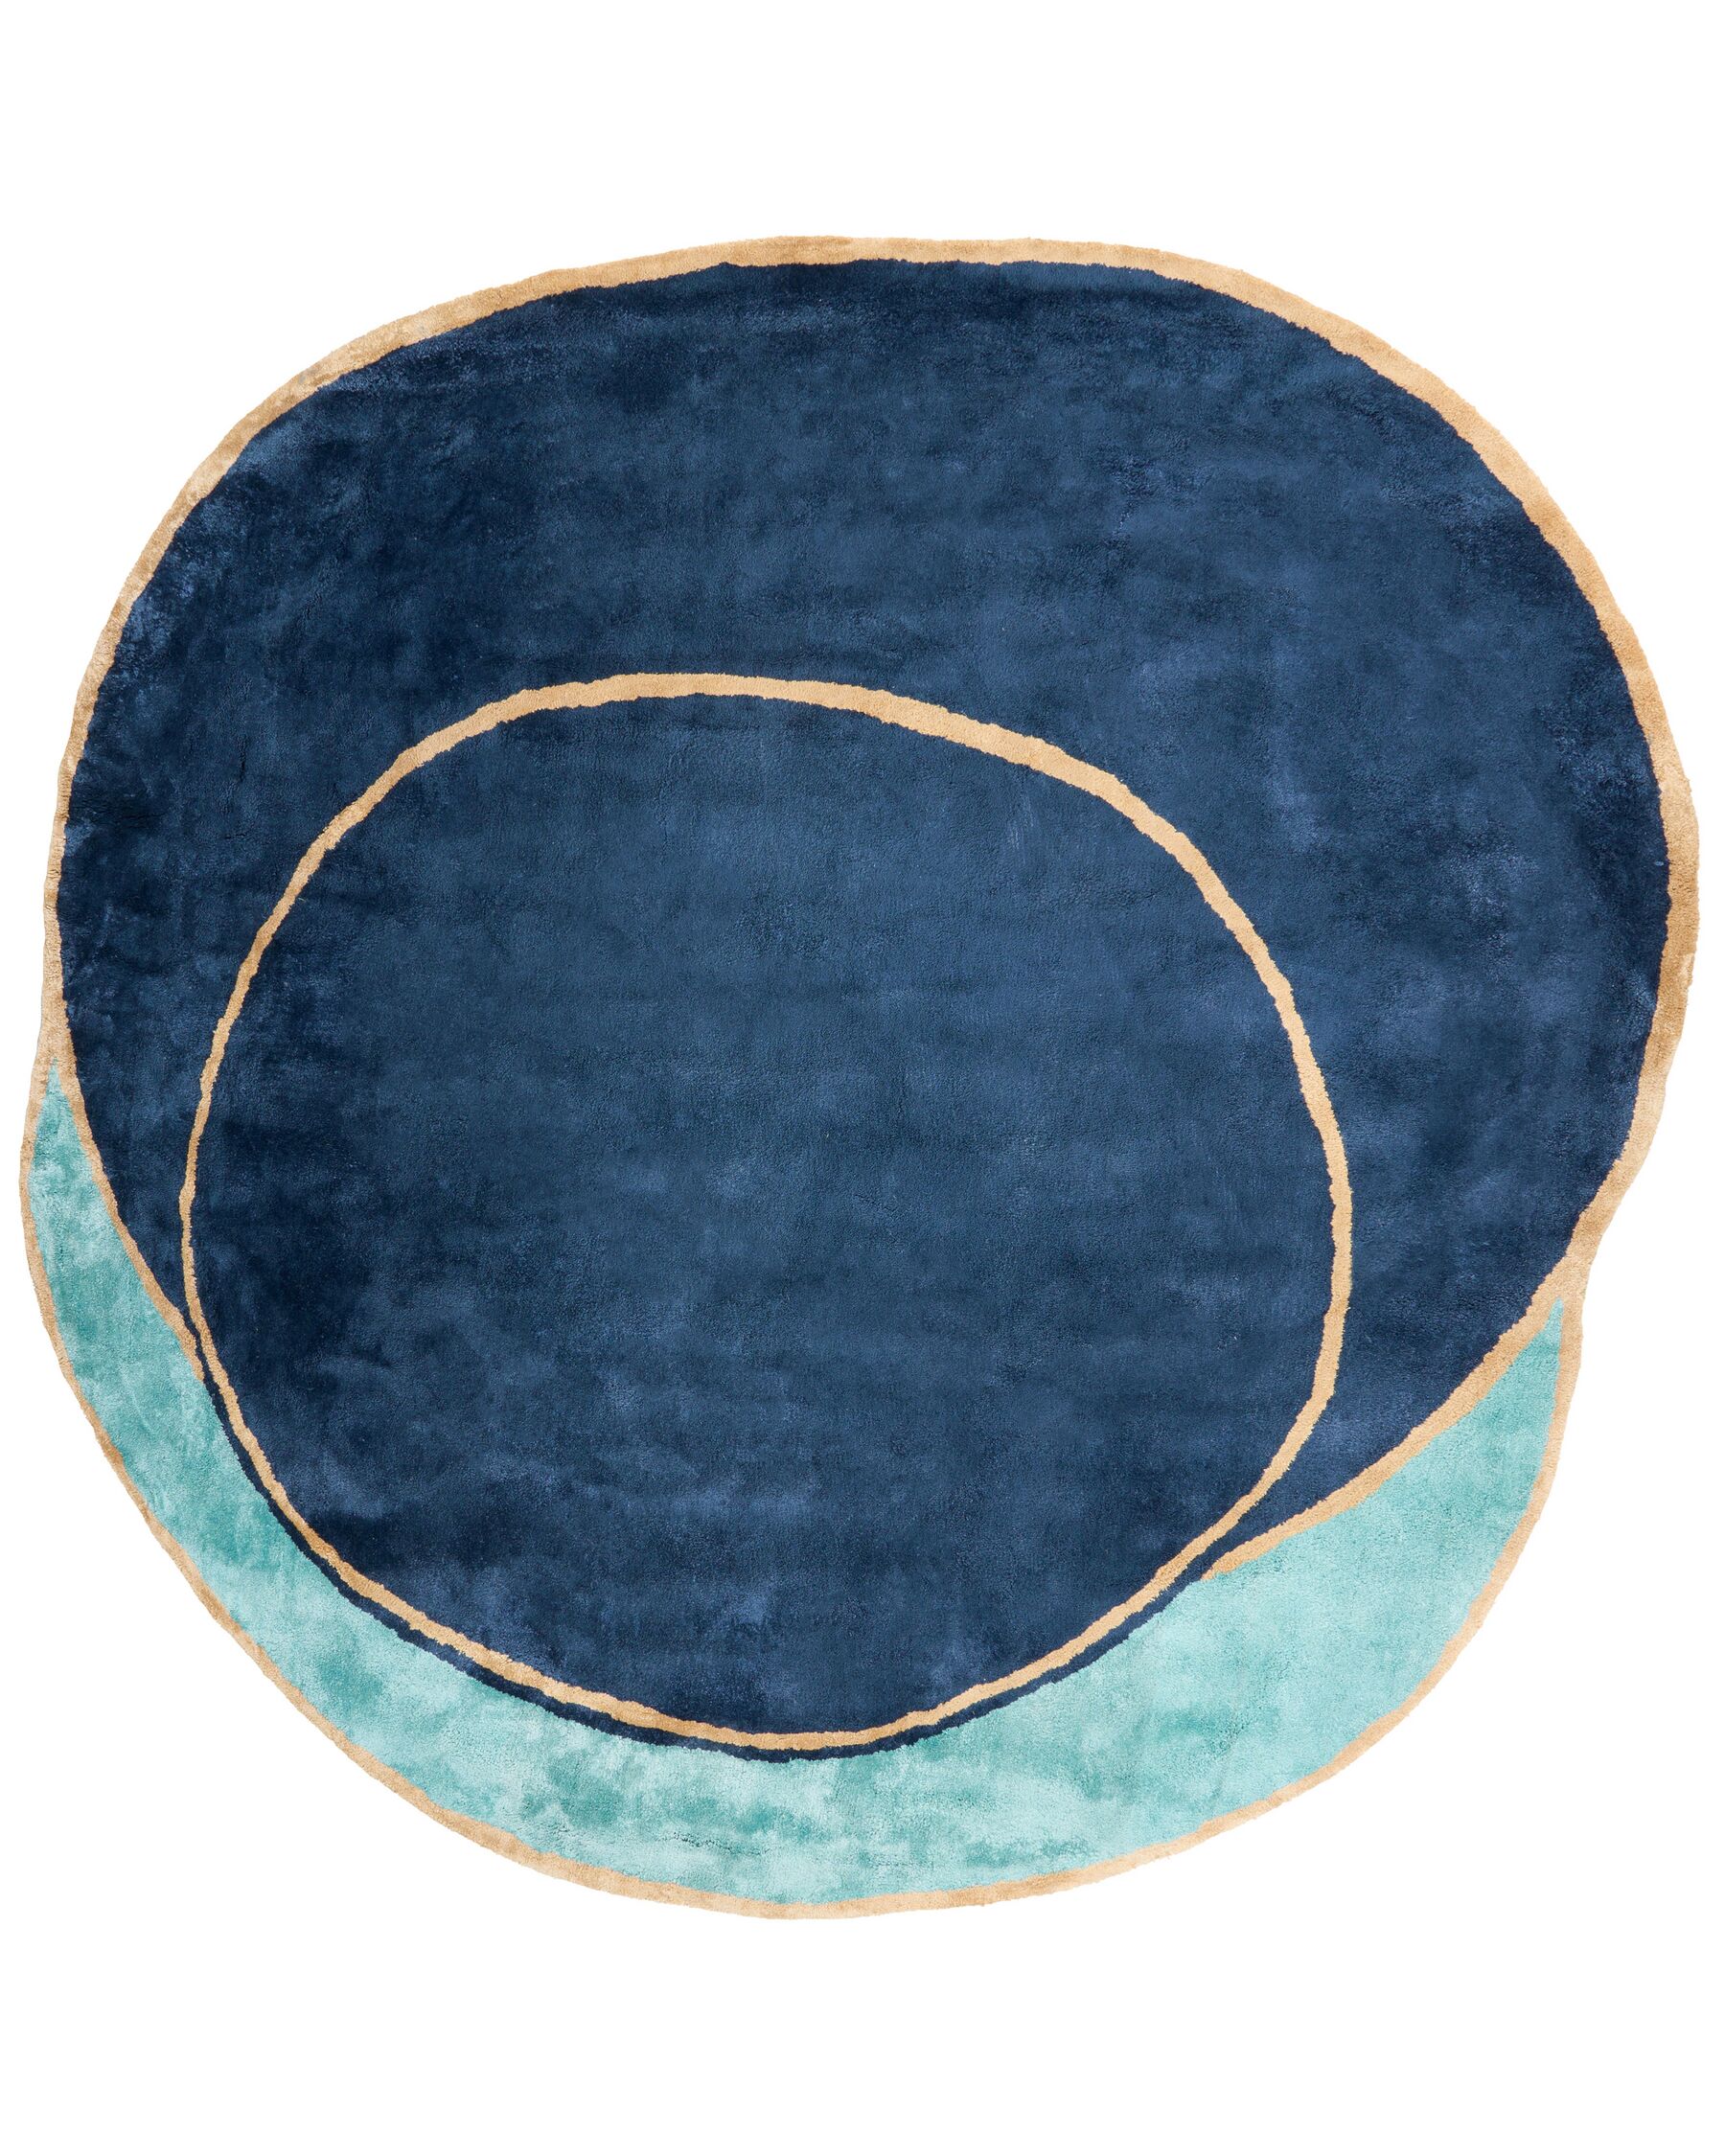 Viskózový koberec 200 x 200 cm námornícka modrá KANRACH_904047